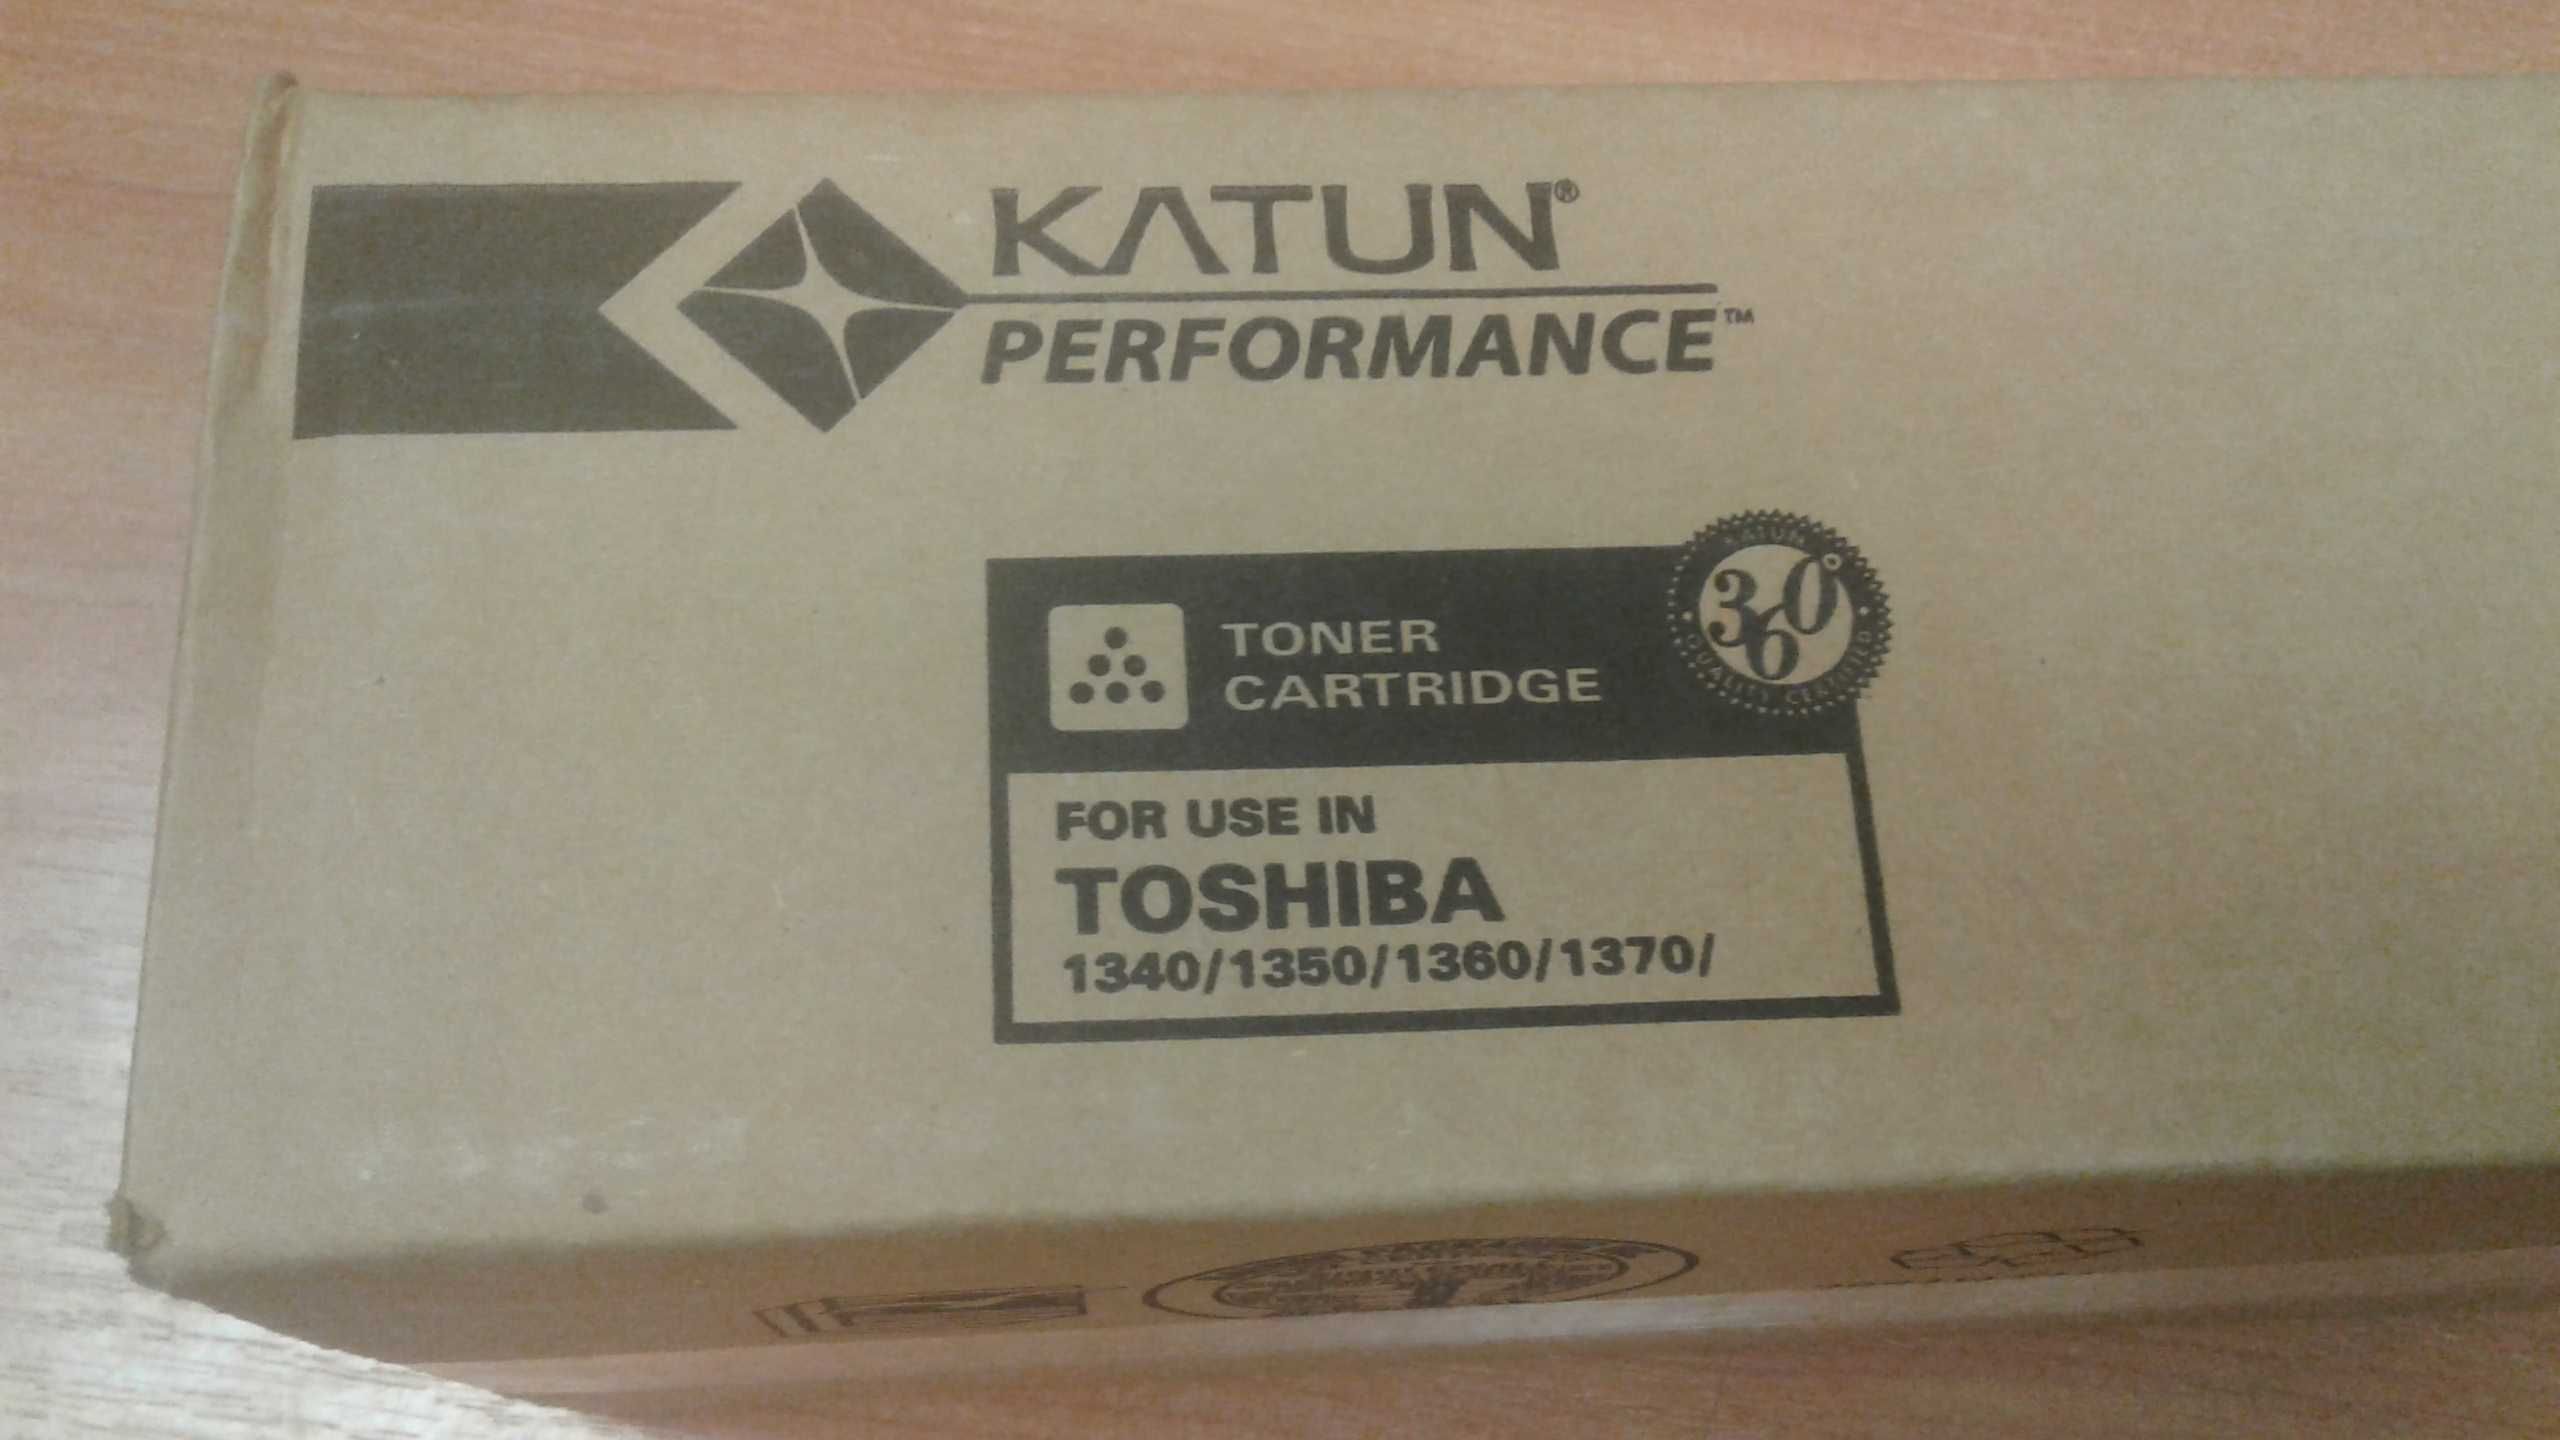 Toshiba 1340/1350/1360/1370 тонер  (Недорого!!)